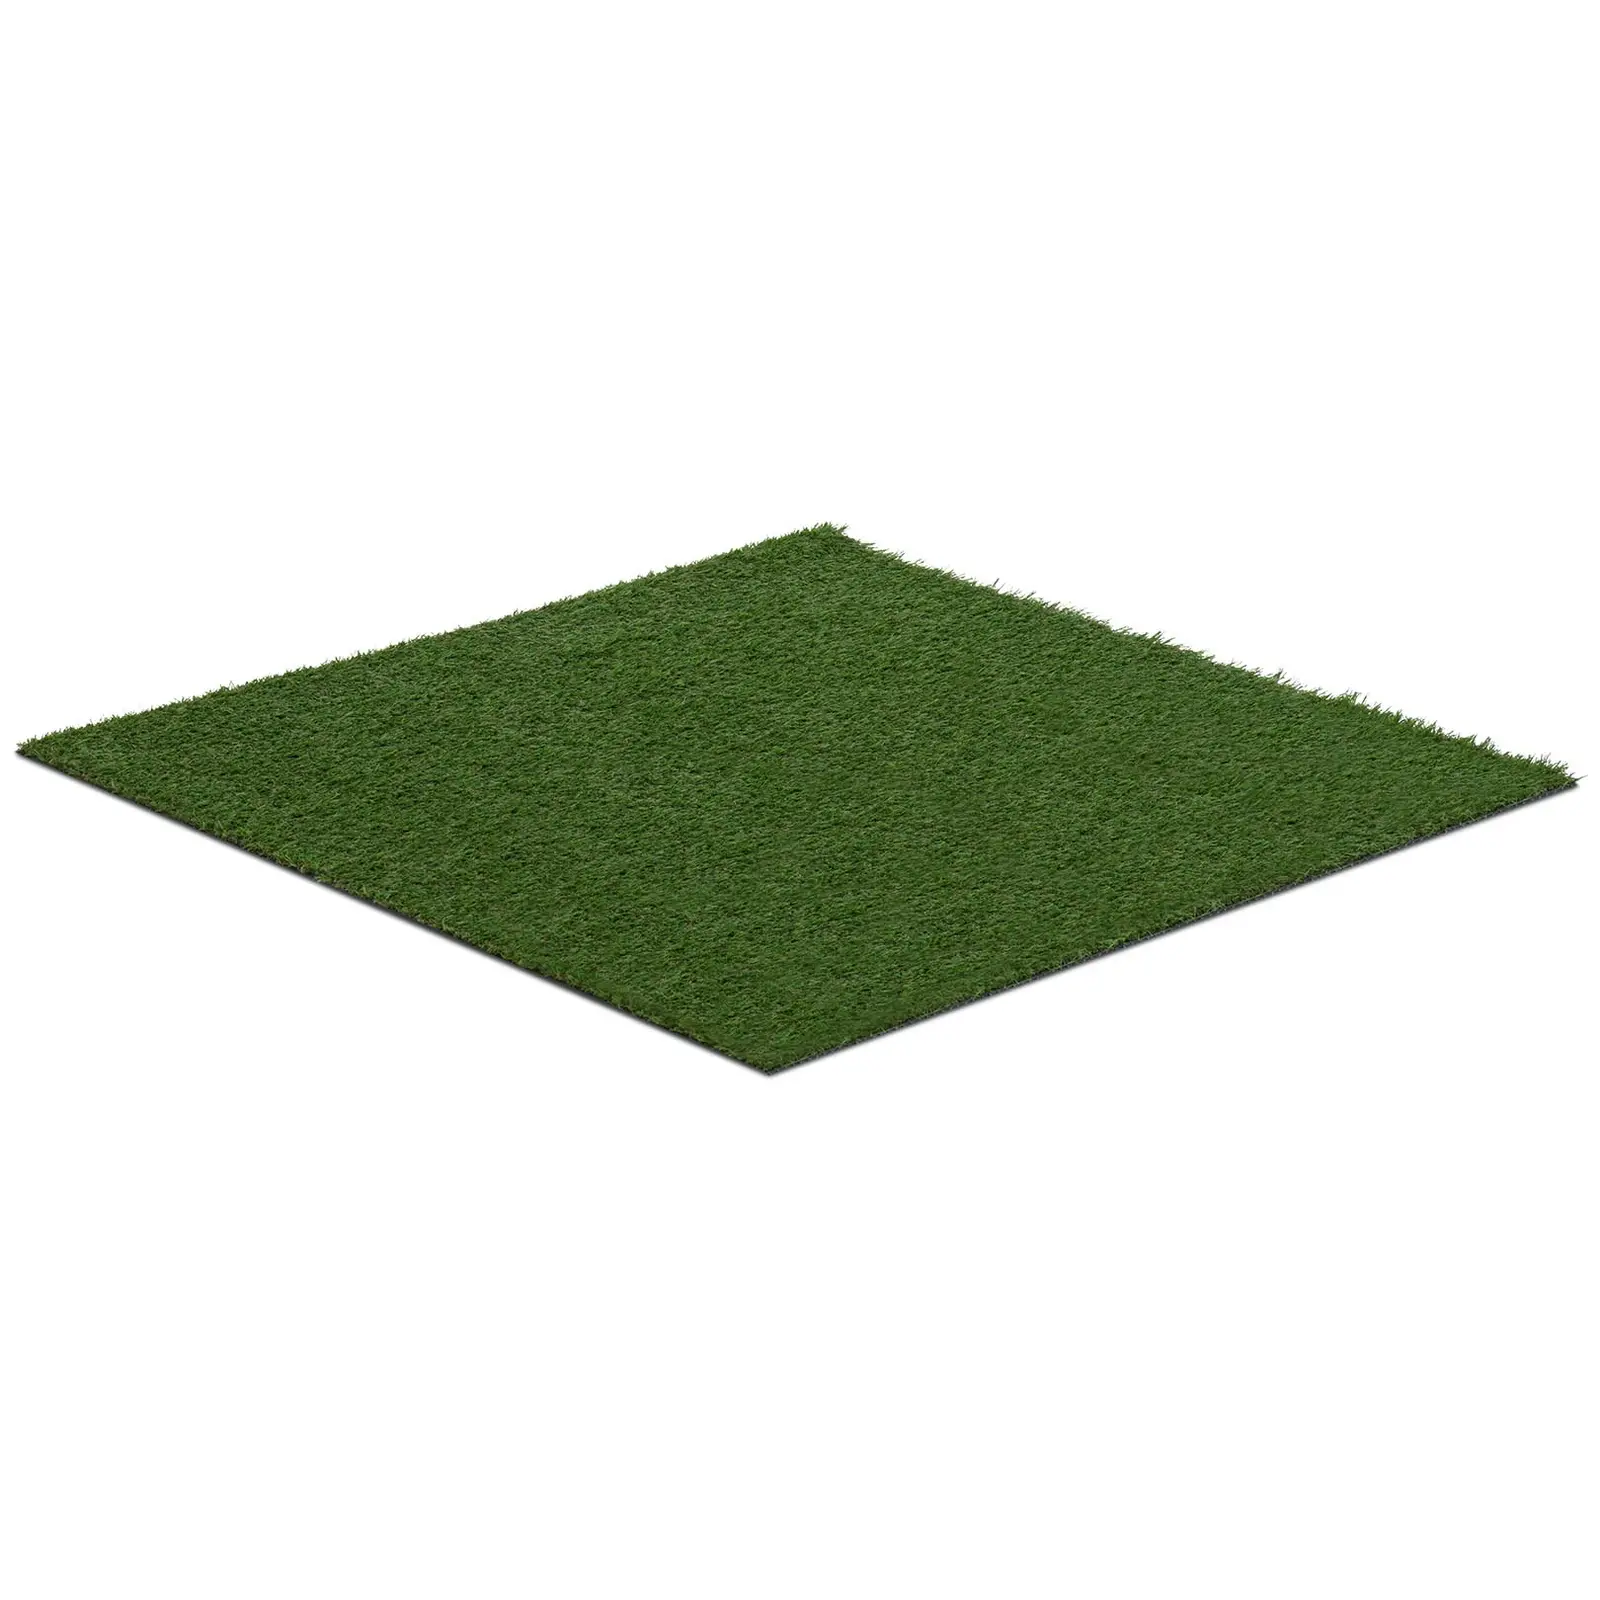 Sztuczna trawa - 100 x 100 cm - wysokość: 20 mm - szybkość ściegu: 13/10 cm - odporność na promieniowanie UV